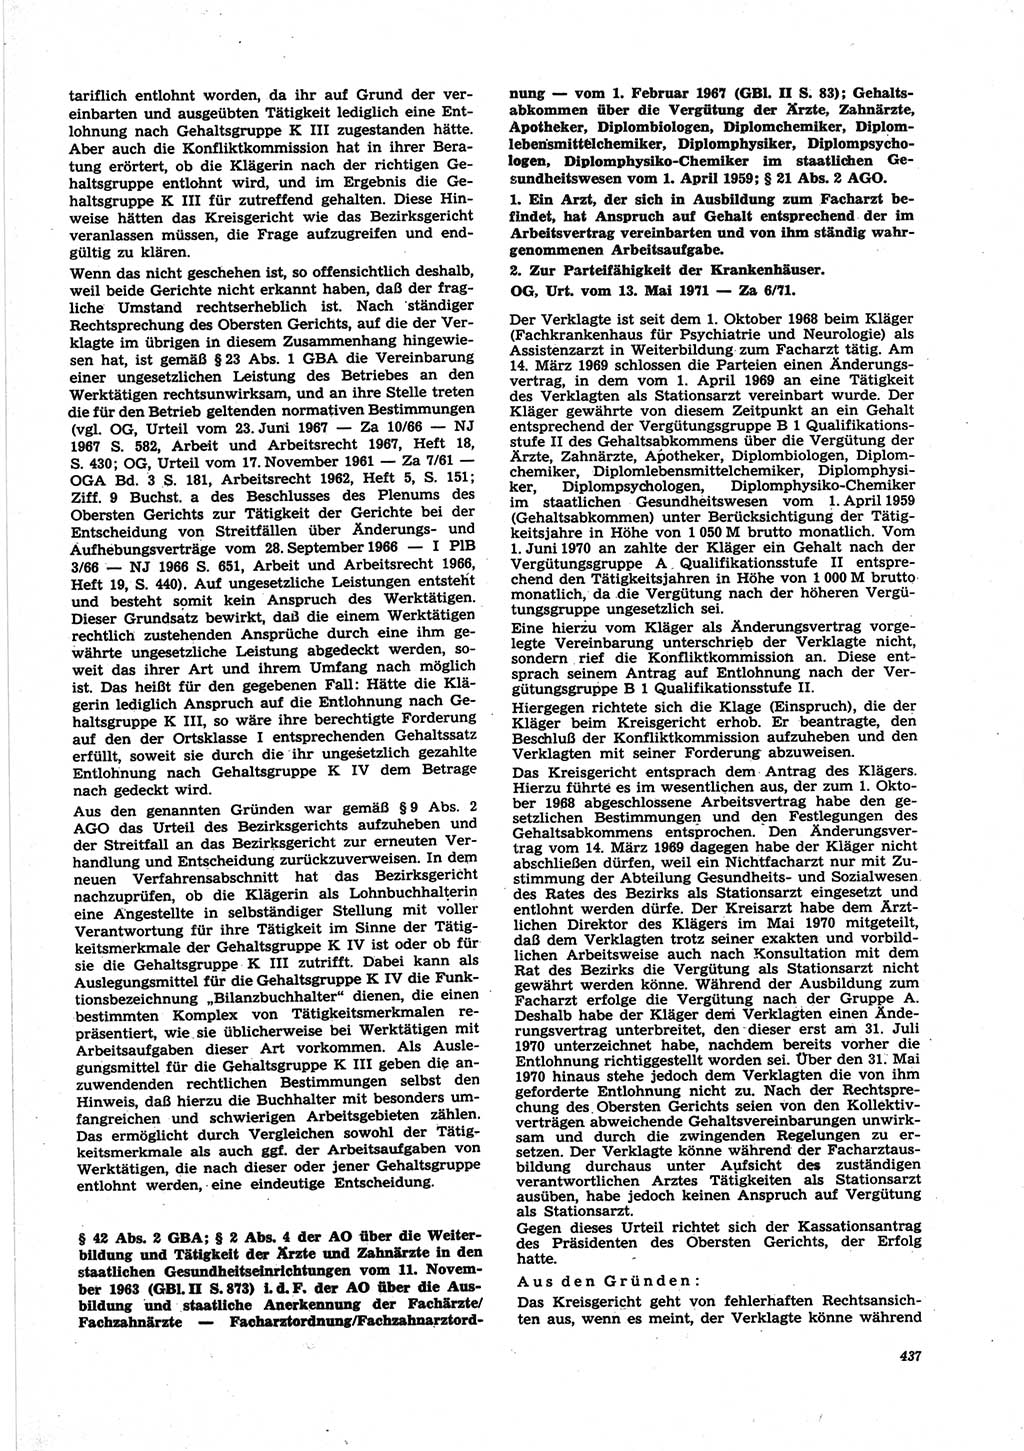 Neue Justiz (NJ), Zeitschrift für Recht und Rechtswissenschaft [Deutsche Demokratische Republik (DDR)], 25. Jahrgang 1971, Seite 437 (NJ DDR 1971, S. 437)